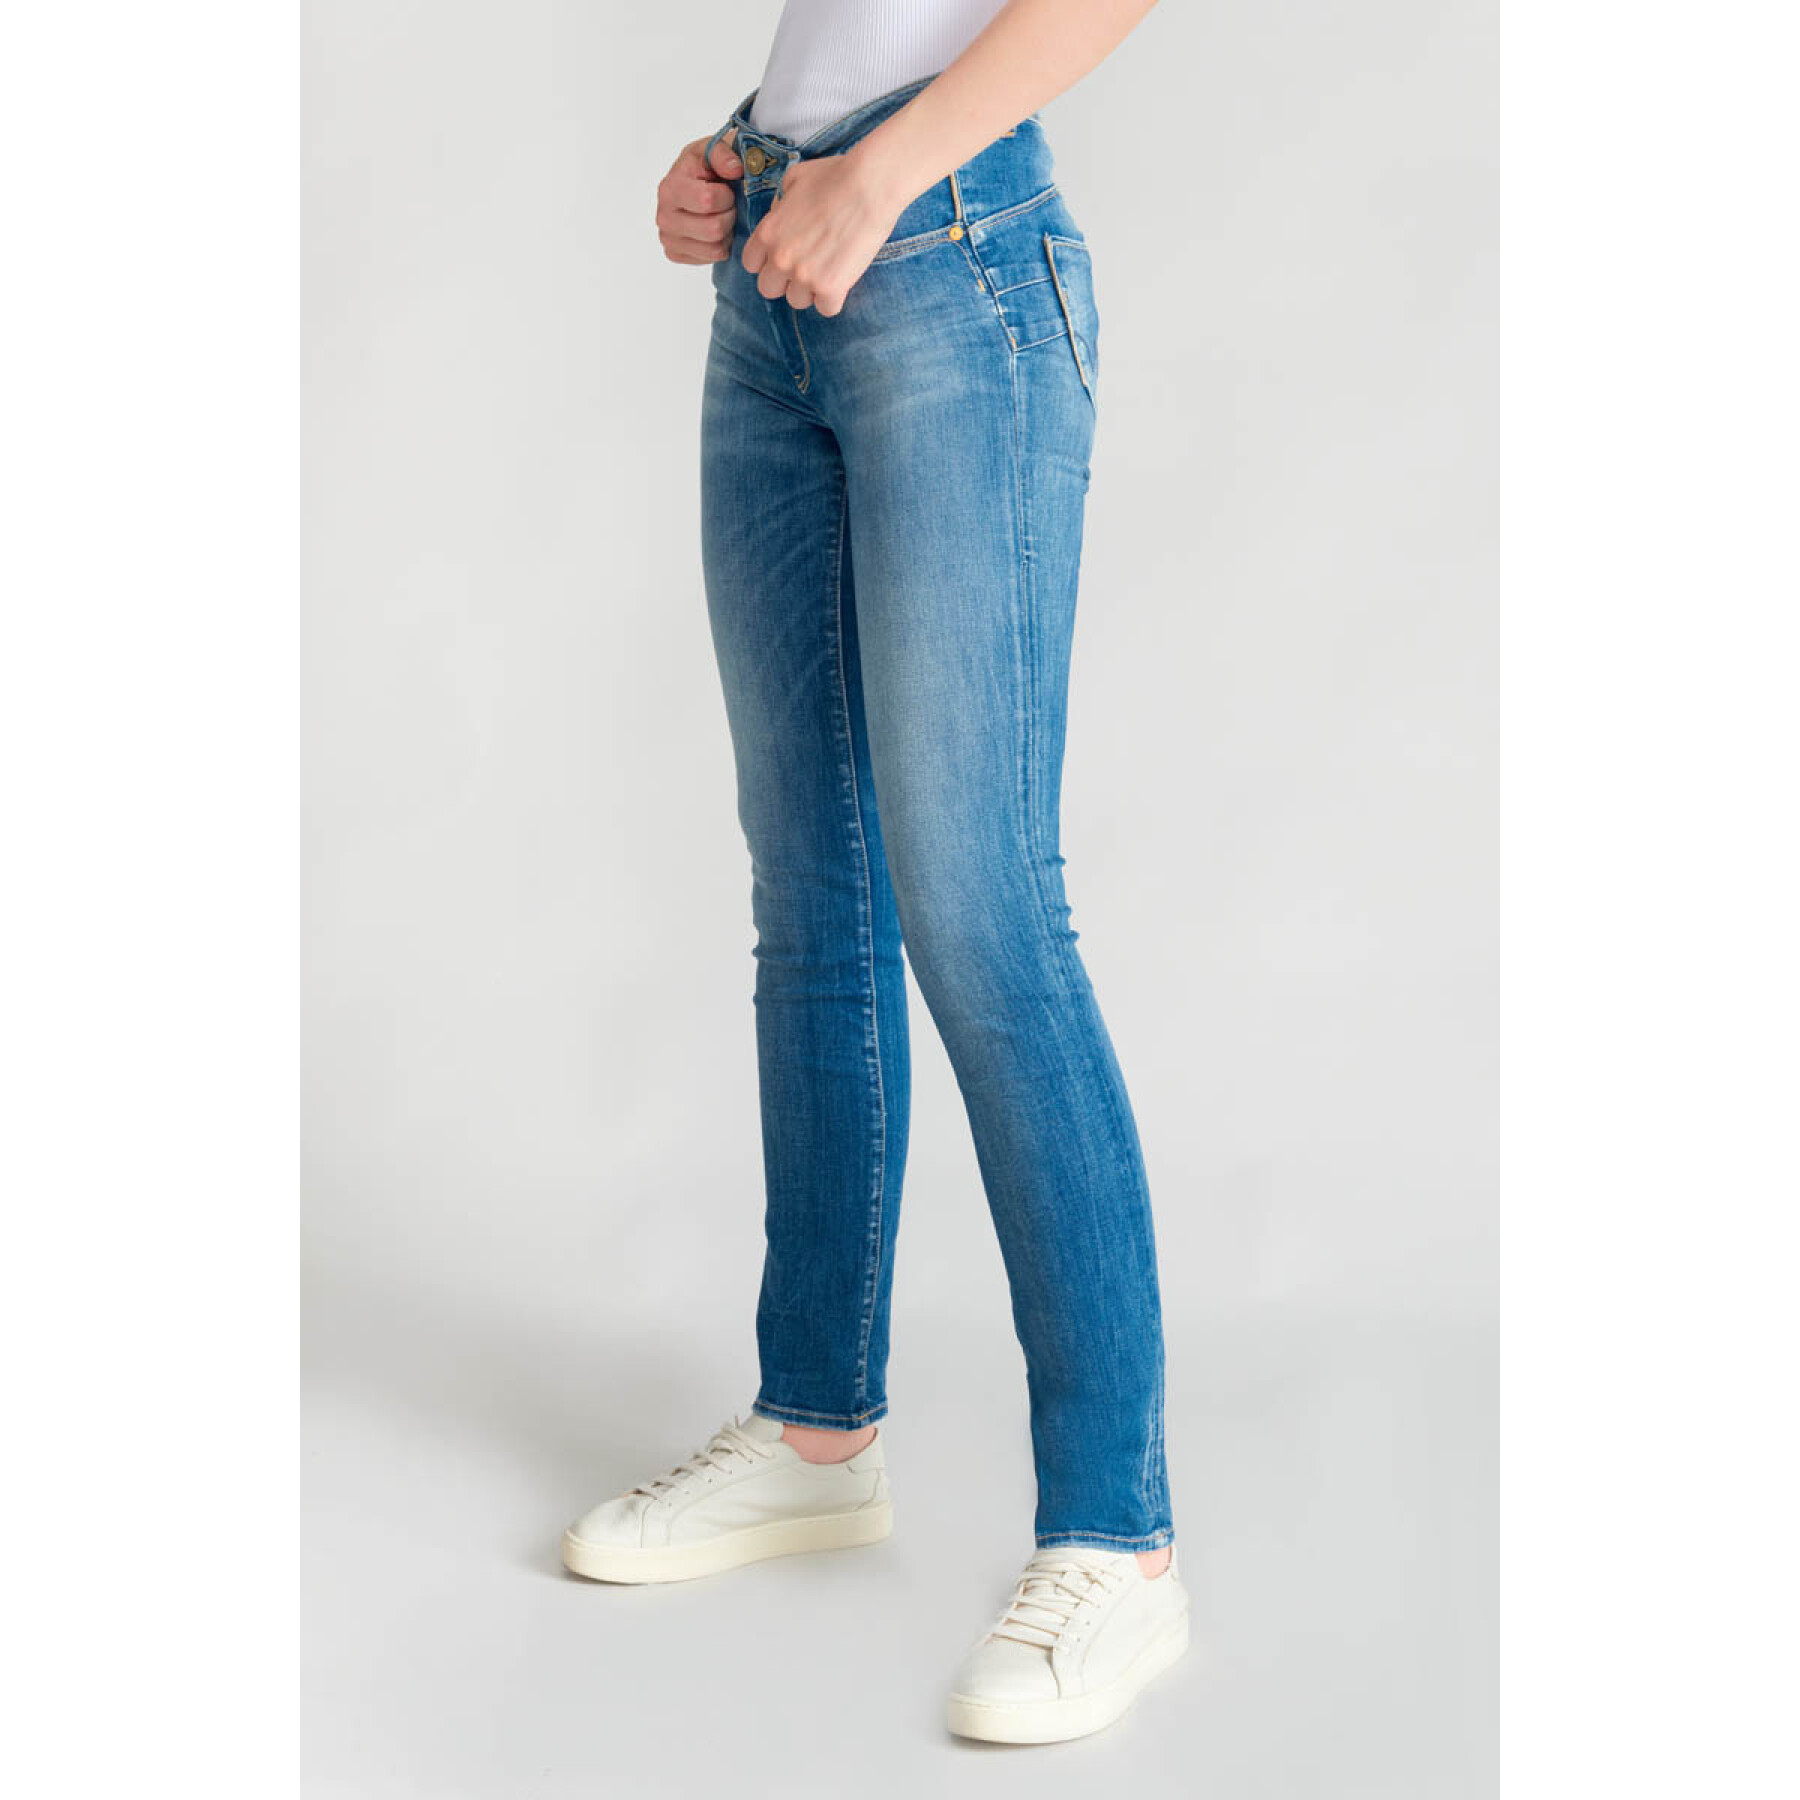 Women's jeans Le Temps des cerises Pomy N°3